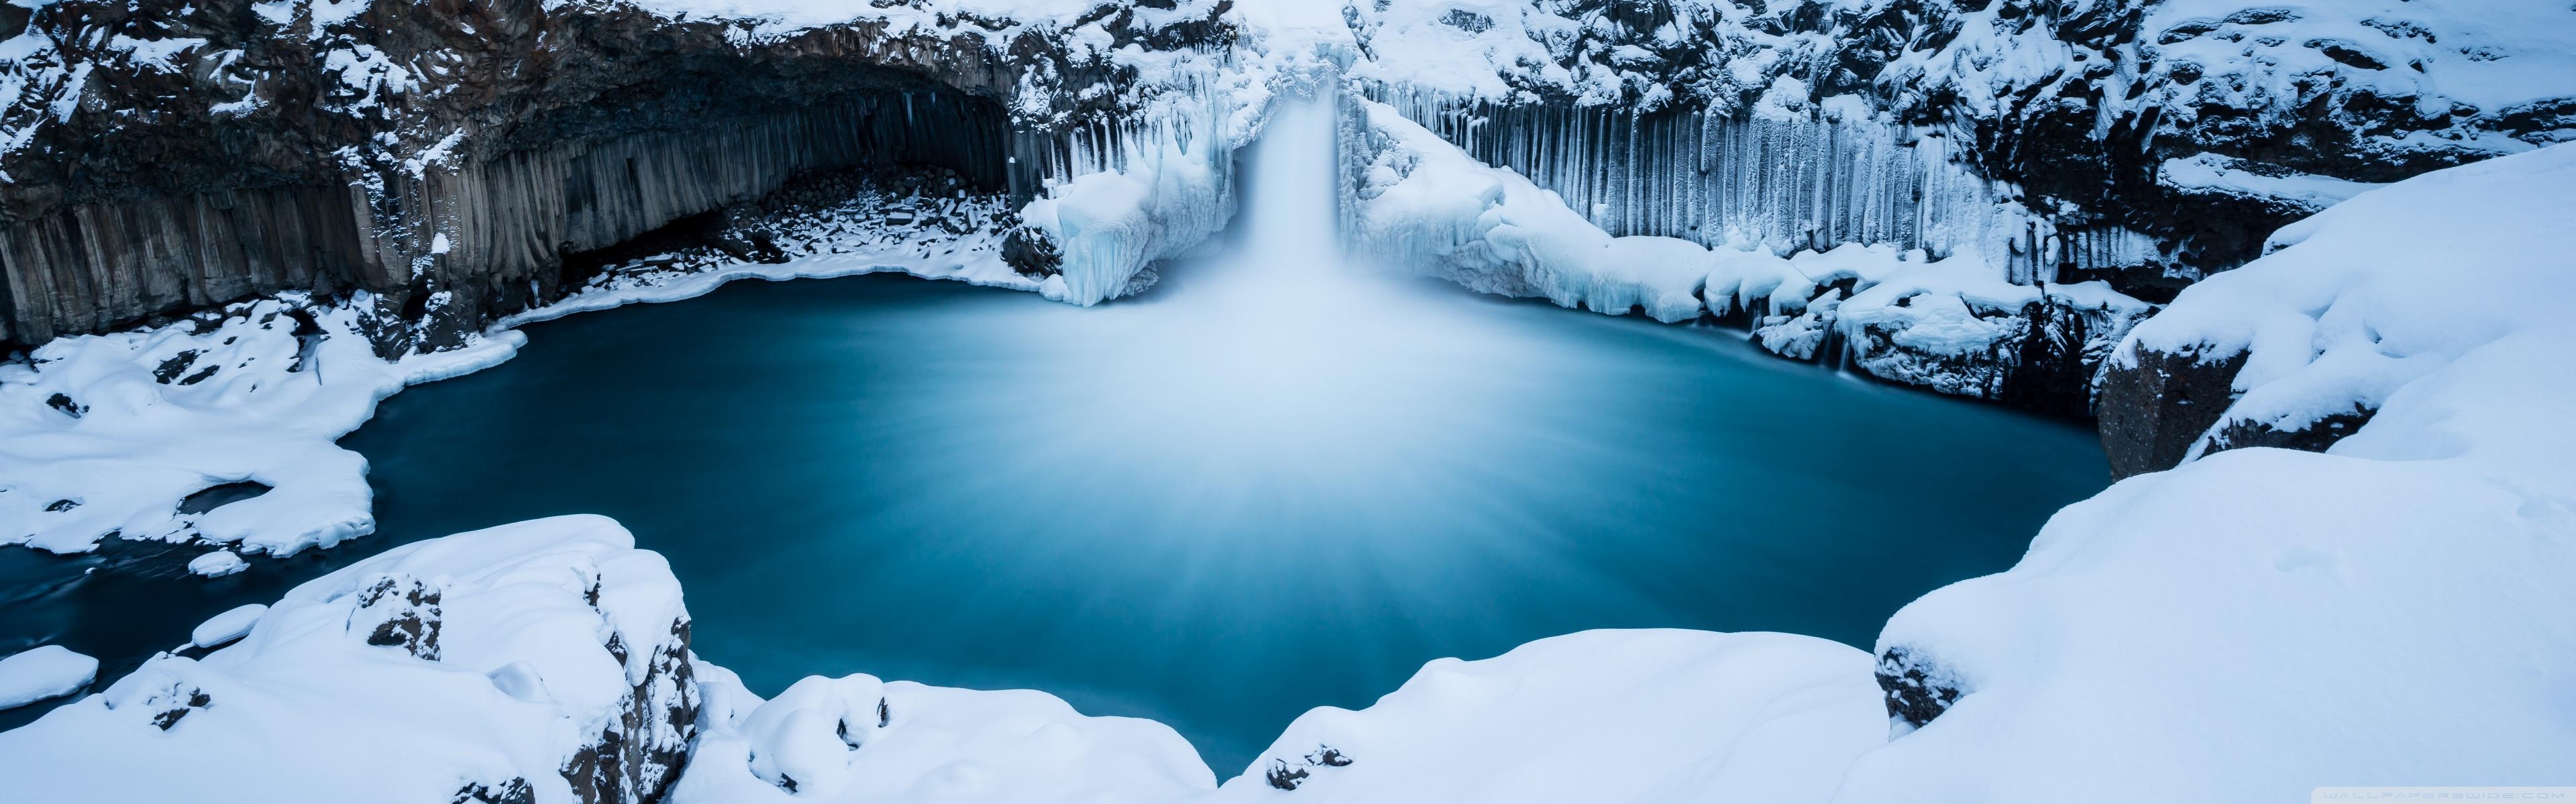 Waterfall In Winter Time Ultra HD Desktop Background Wallpaper For